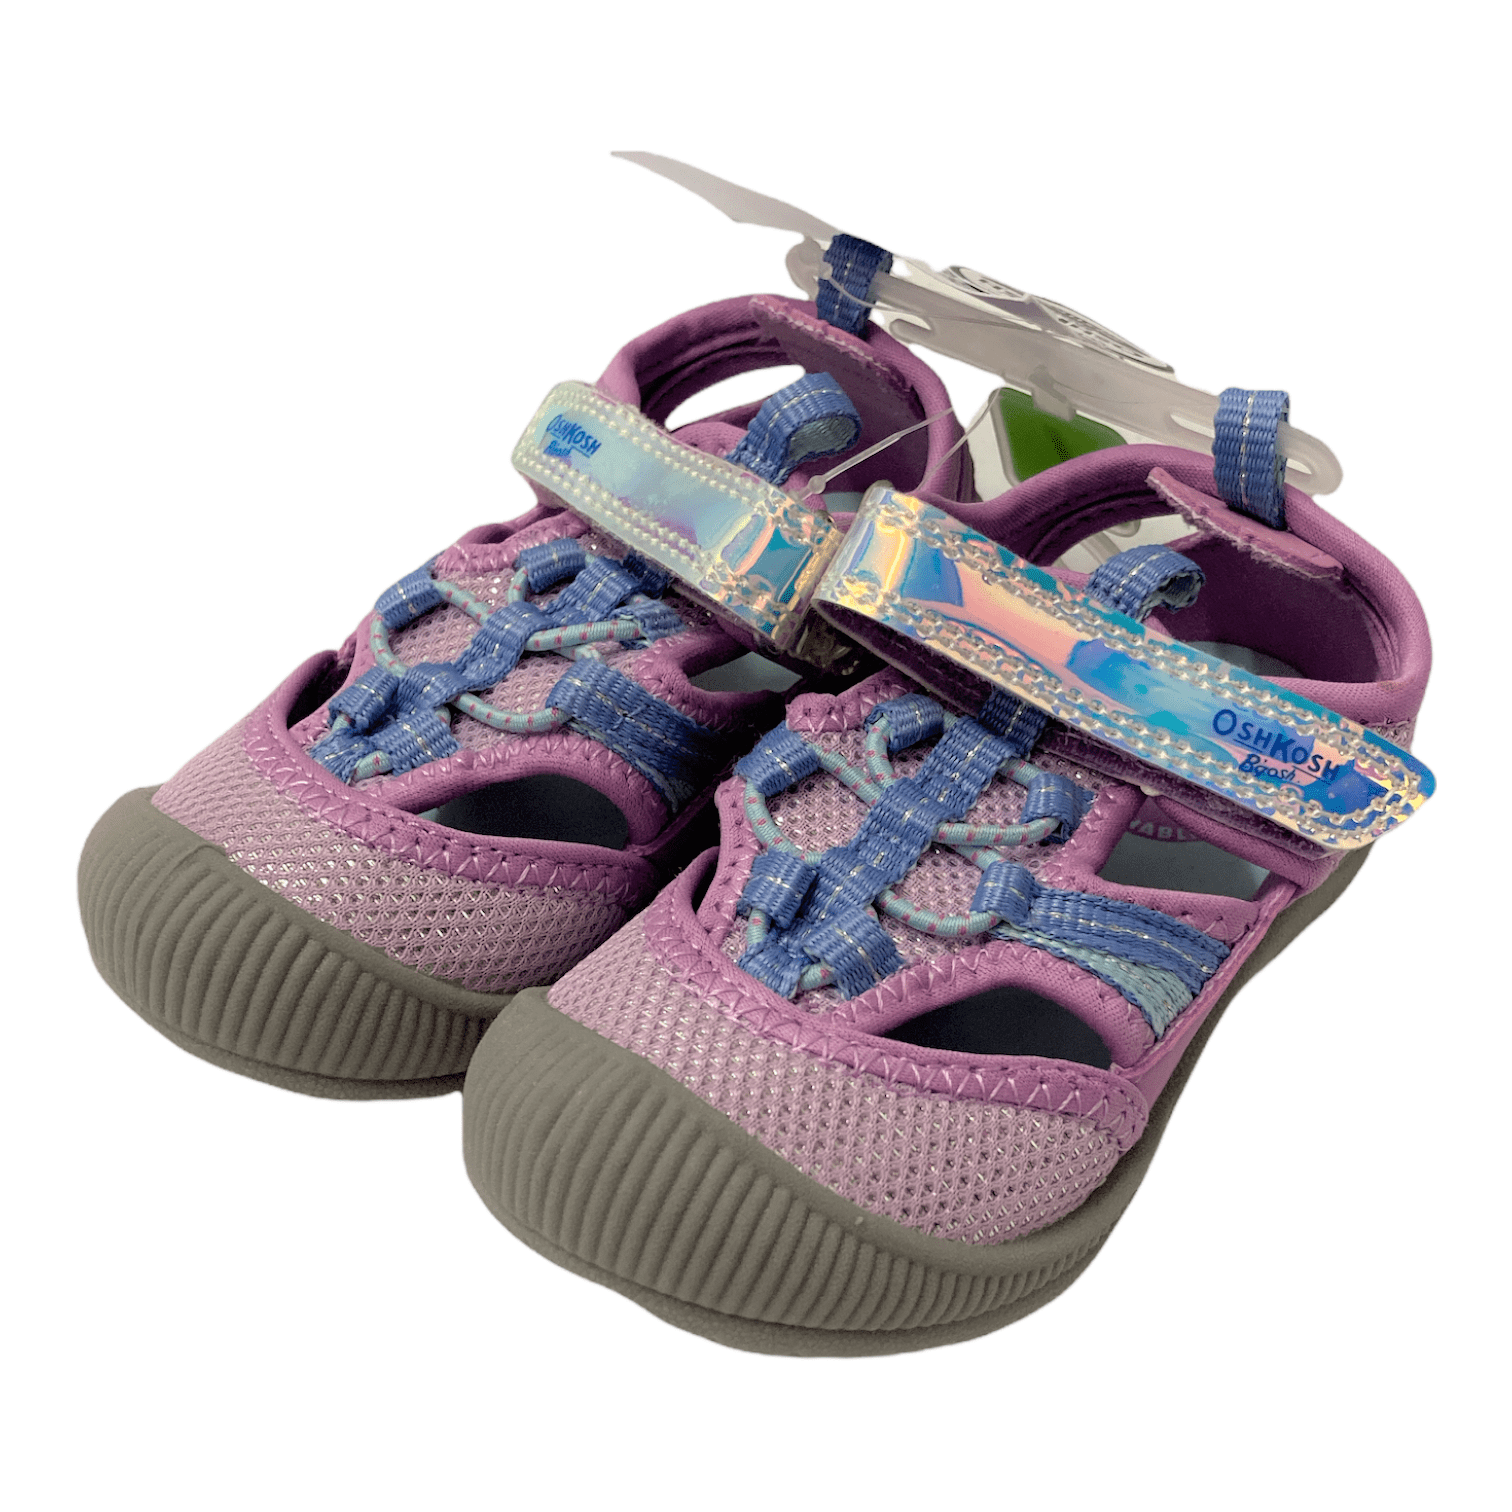 NEW Oshkosh B’gosh Machine Washable Girls Myla-G Shoes Periwinkle Choose Size 